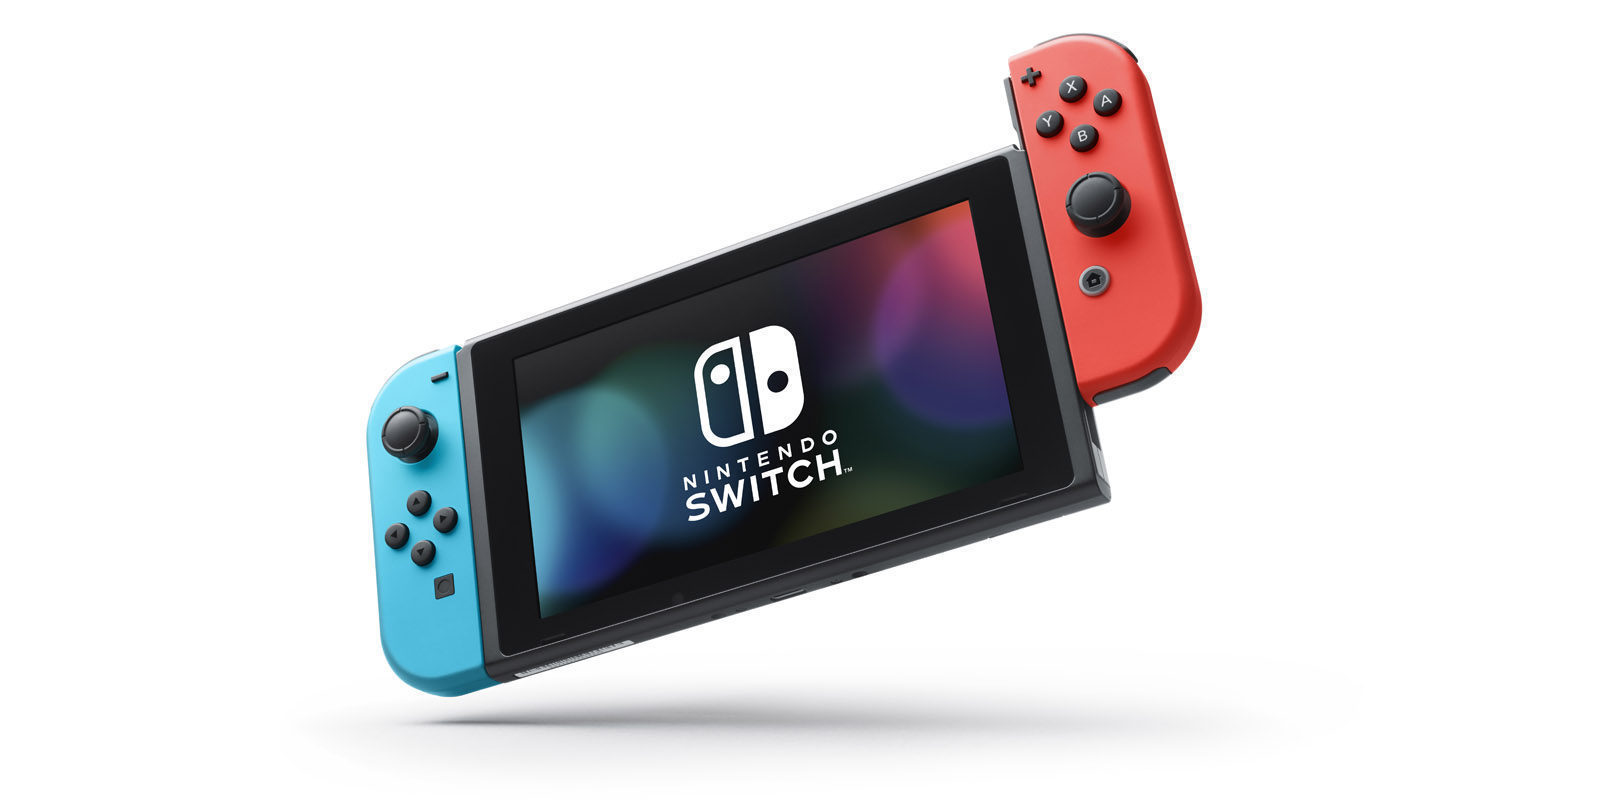 Nintendo Switch no permite compartir descargas, al menos de lanzamiento